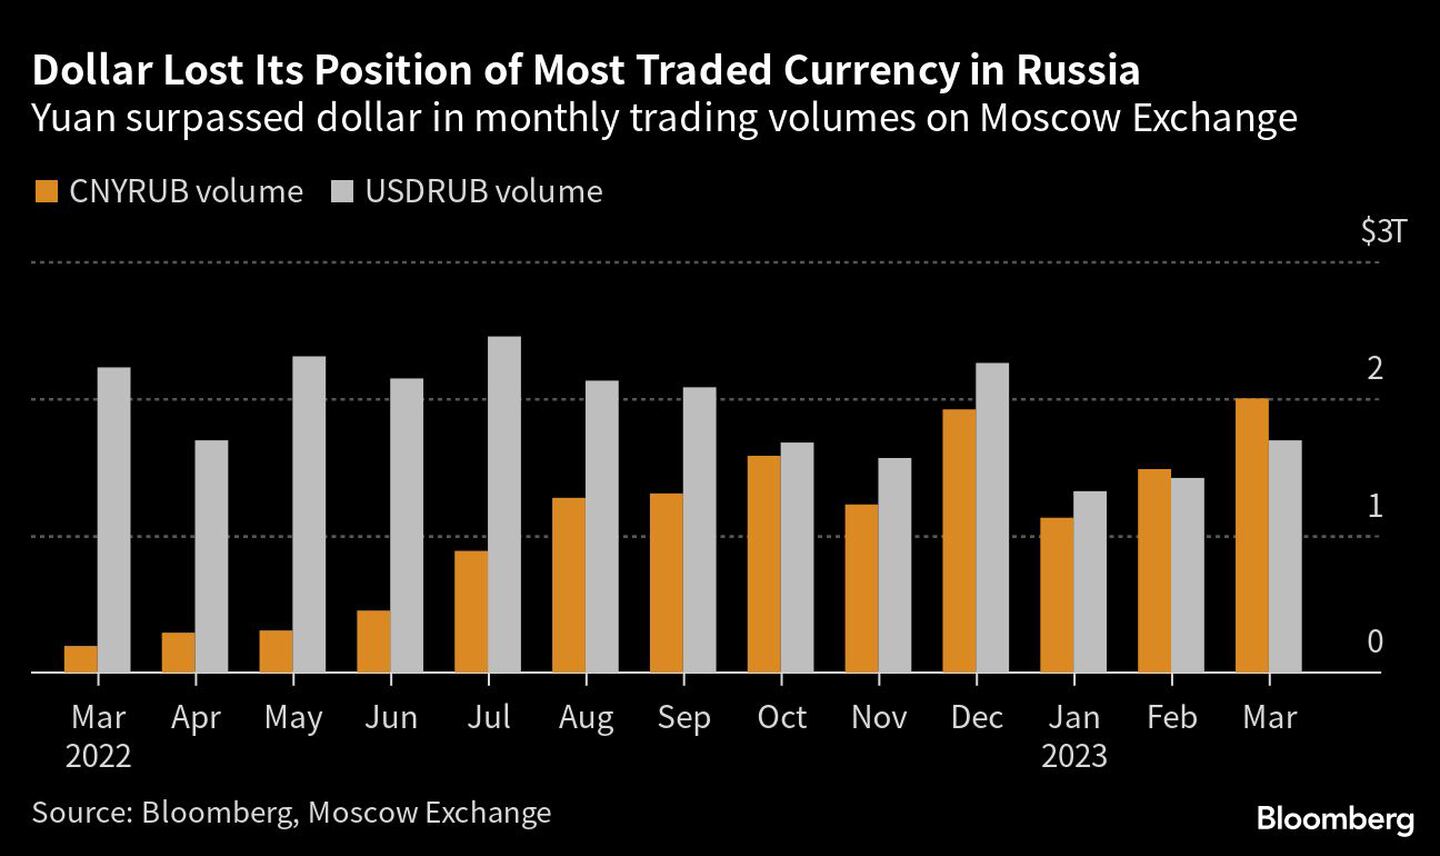  El yuan superó al dólar en volumen mensual de operaciones en la Bolsa de Moscúdfd